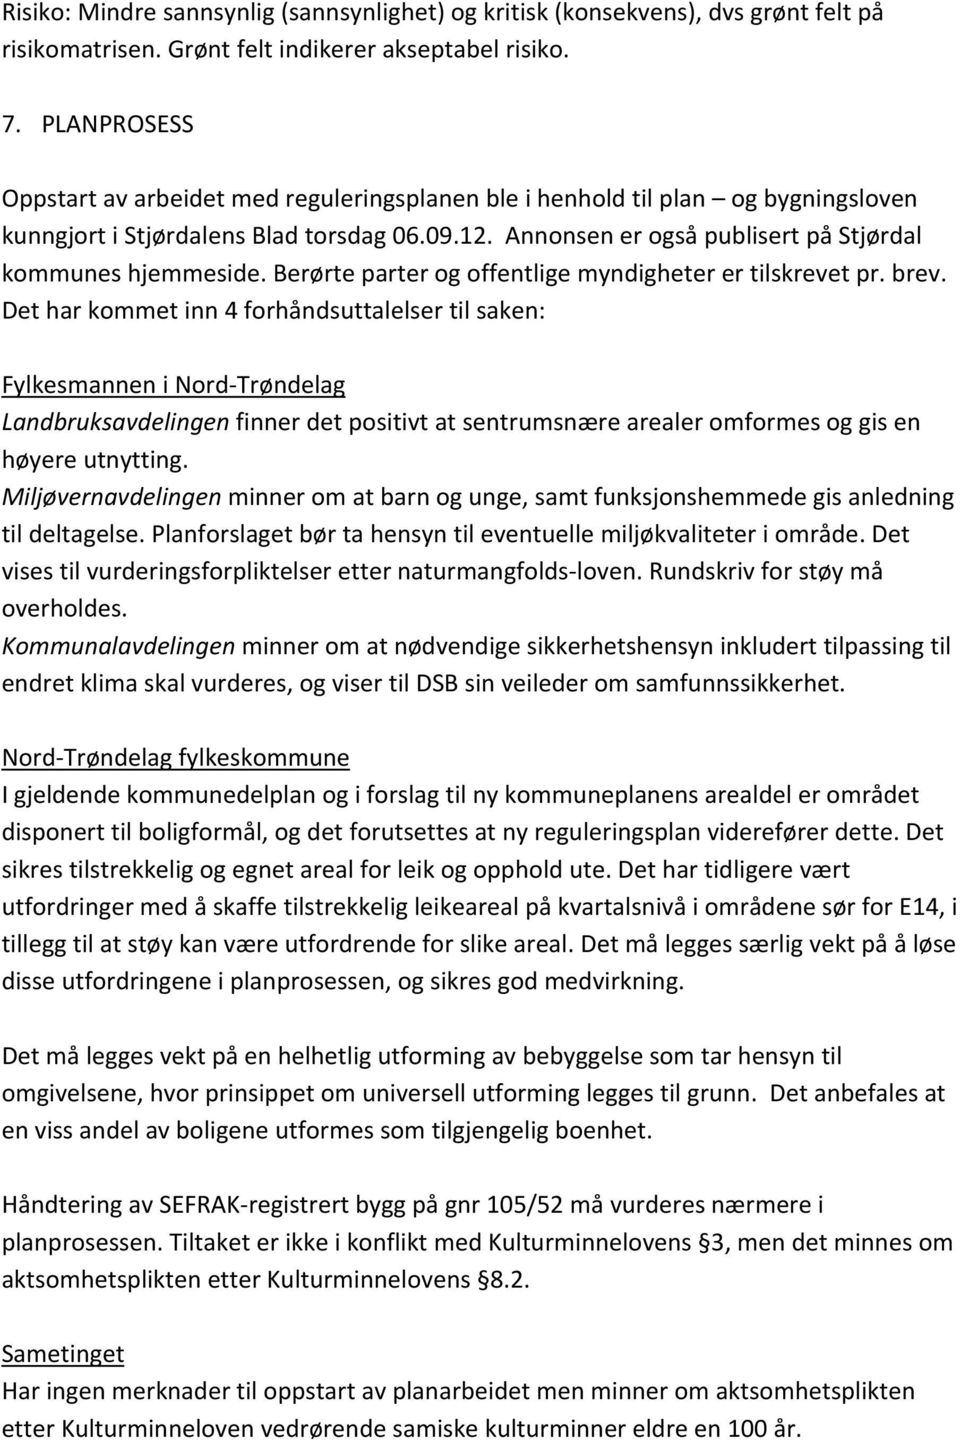 Annonsen er også publisert på Stjørdal kommunes hjemmeside. Berørte parter og offentlige myndigheter er tilskrevet pr. brev.